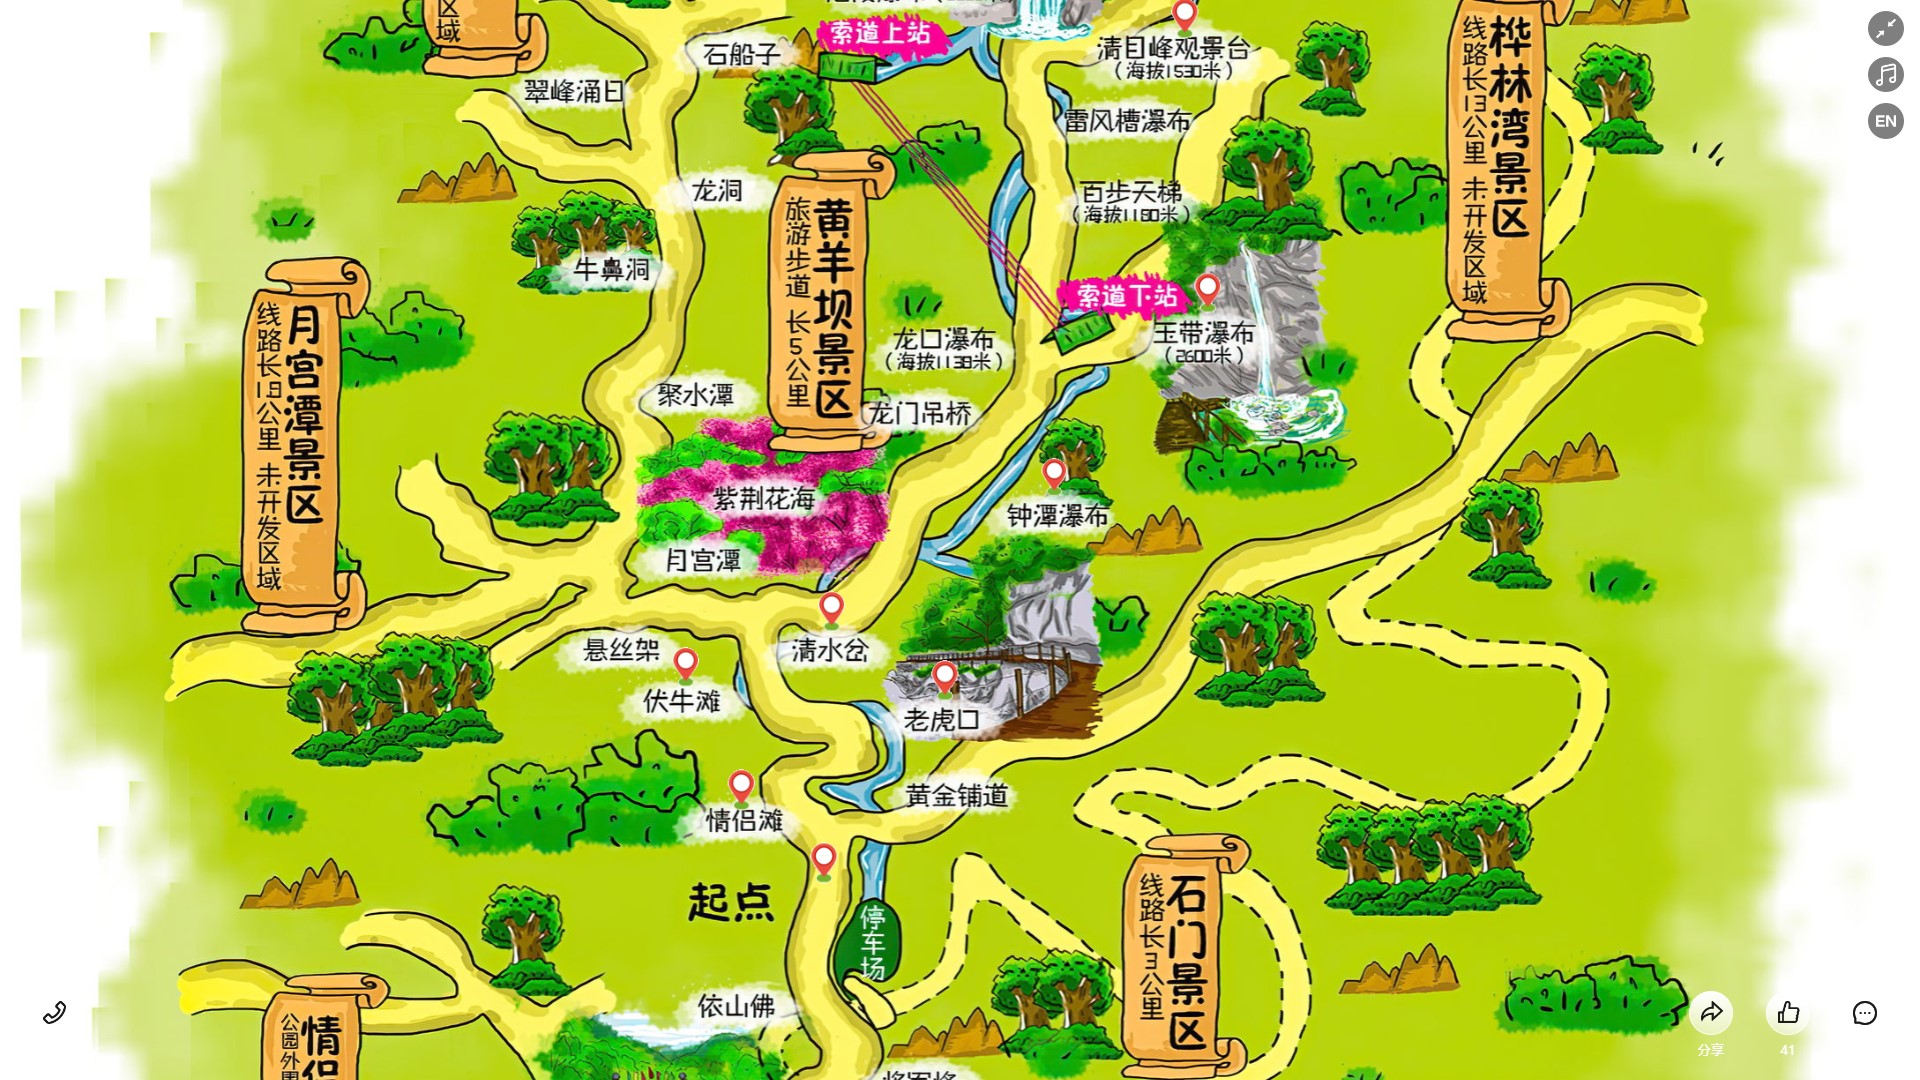 茶山镇景区导览系统